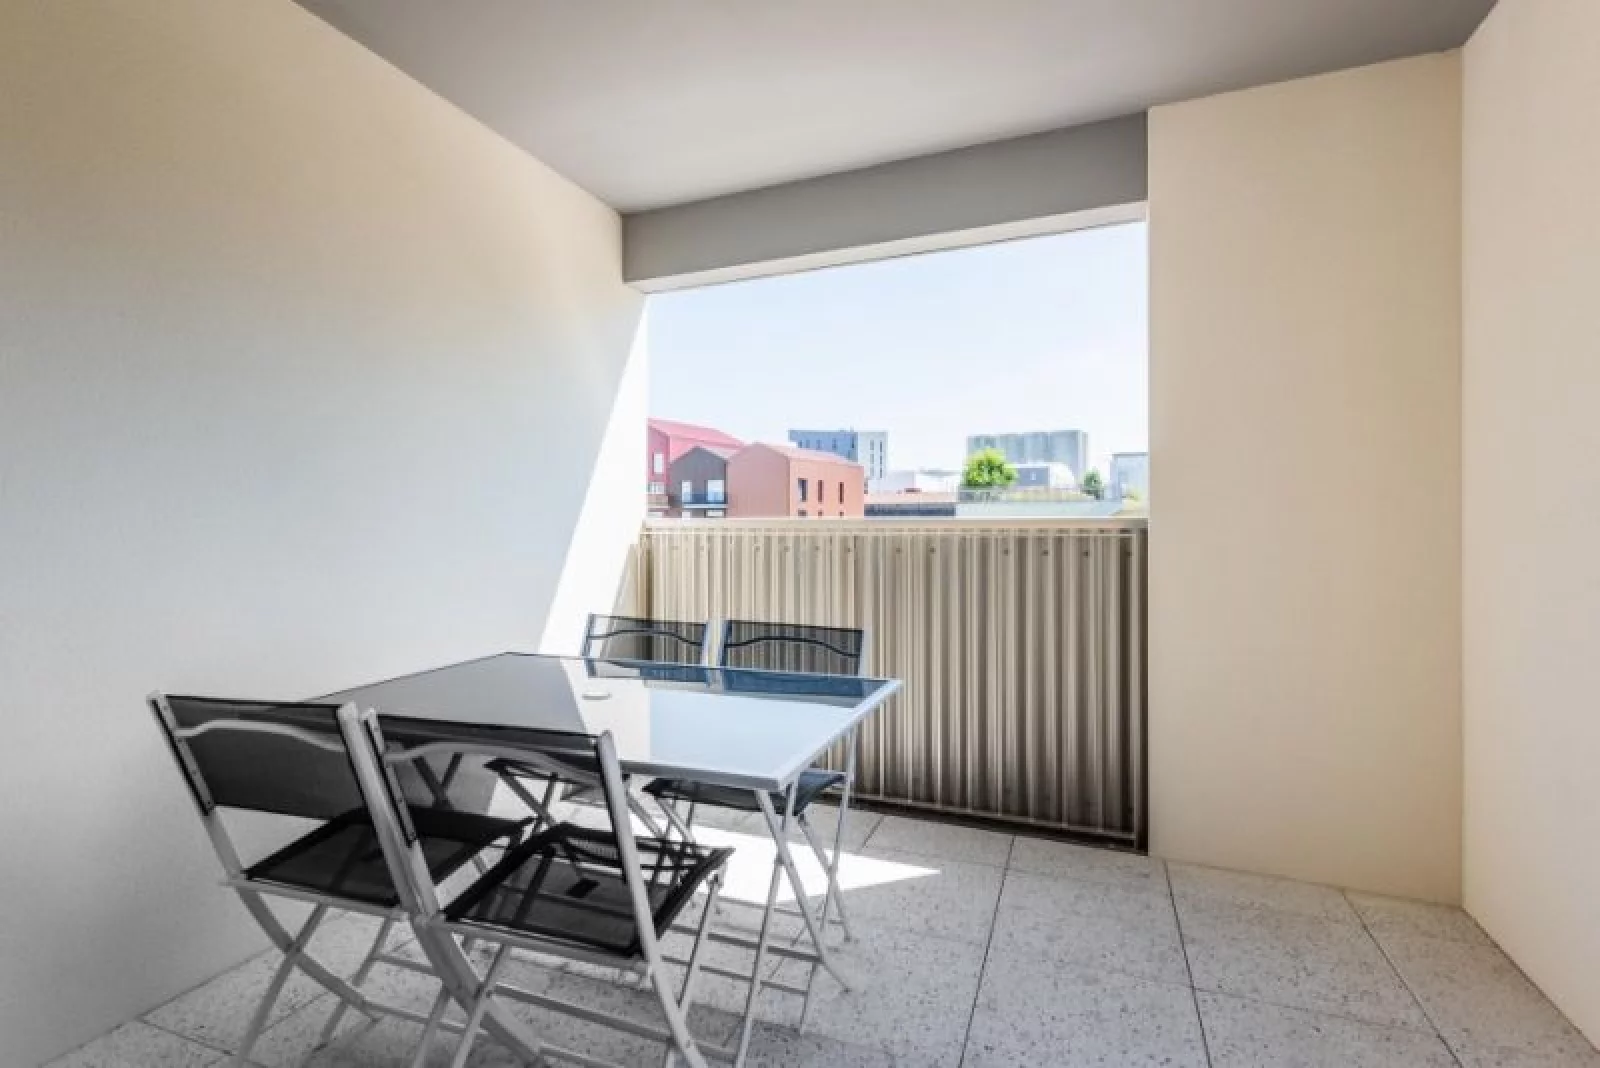 Location appartement meublé 2 pièces de 42m² (Bordeaux - Bassins à flot)